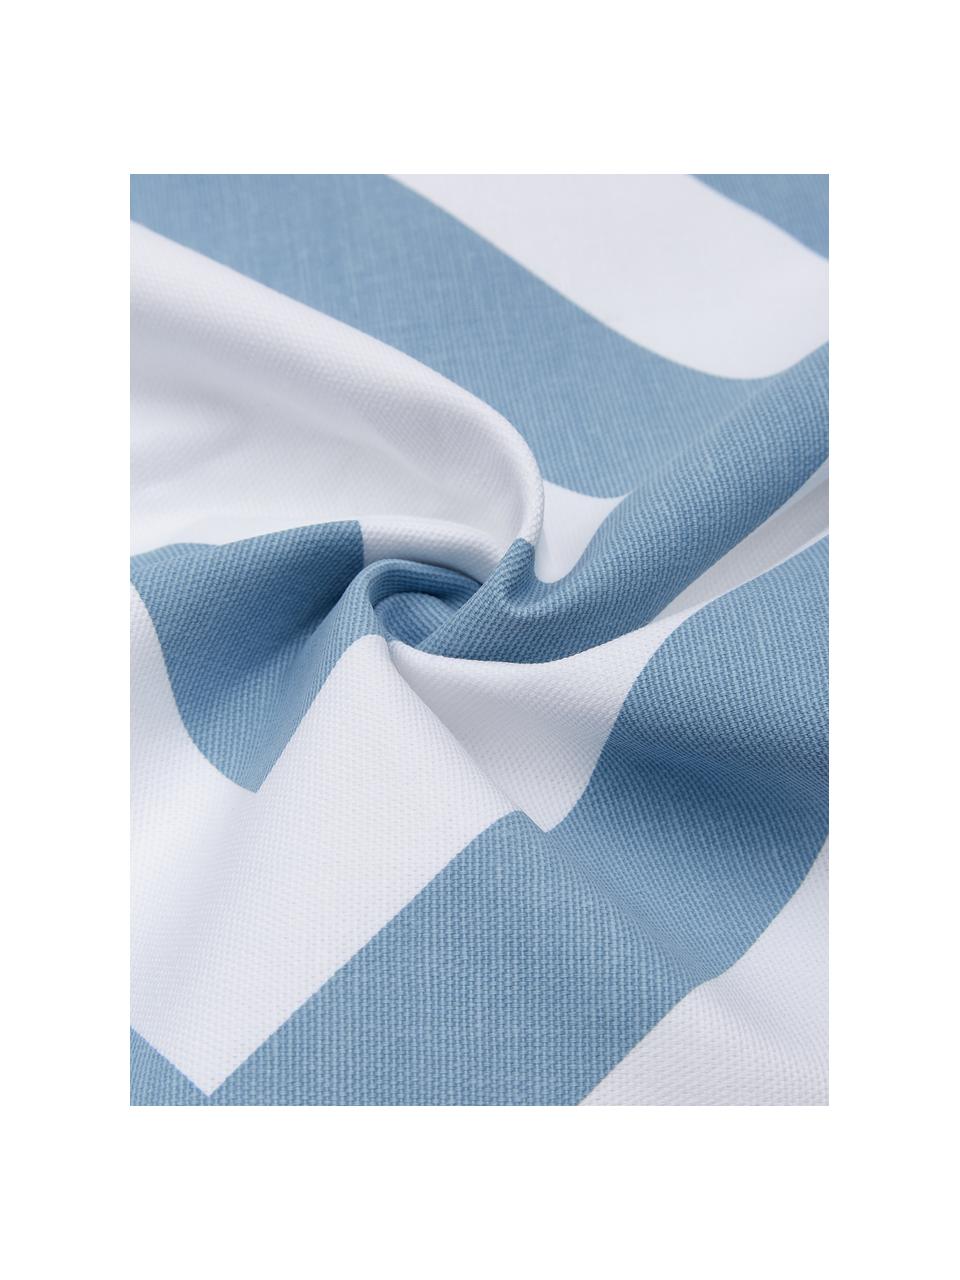 Poszewka na poduszkę Sera, 100% bawełna, Biały, jasny niebieski, S 45 x D 45 cm